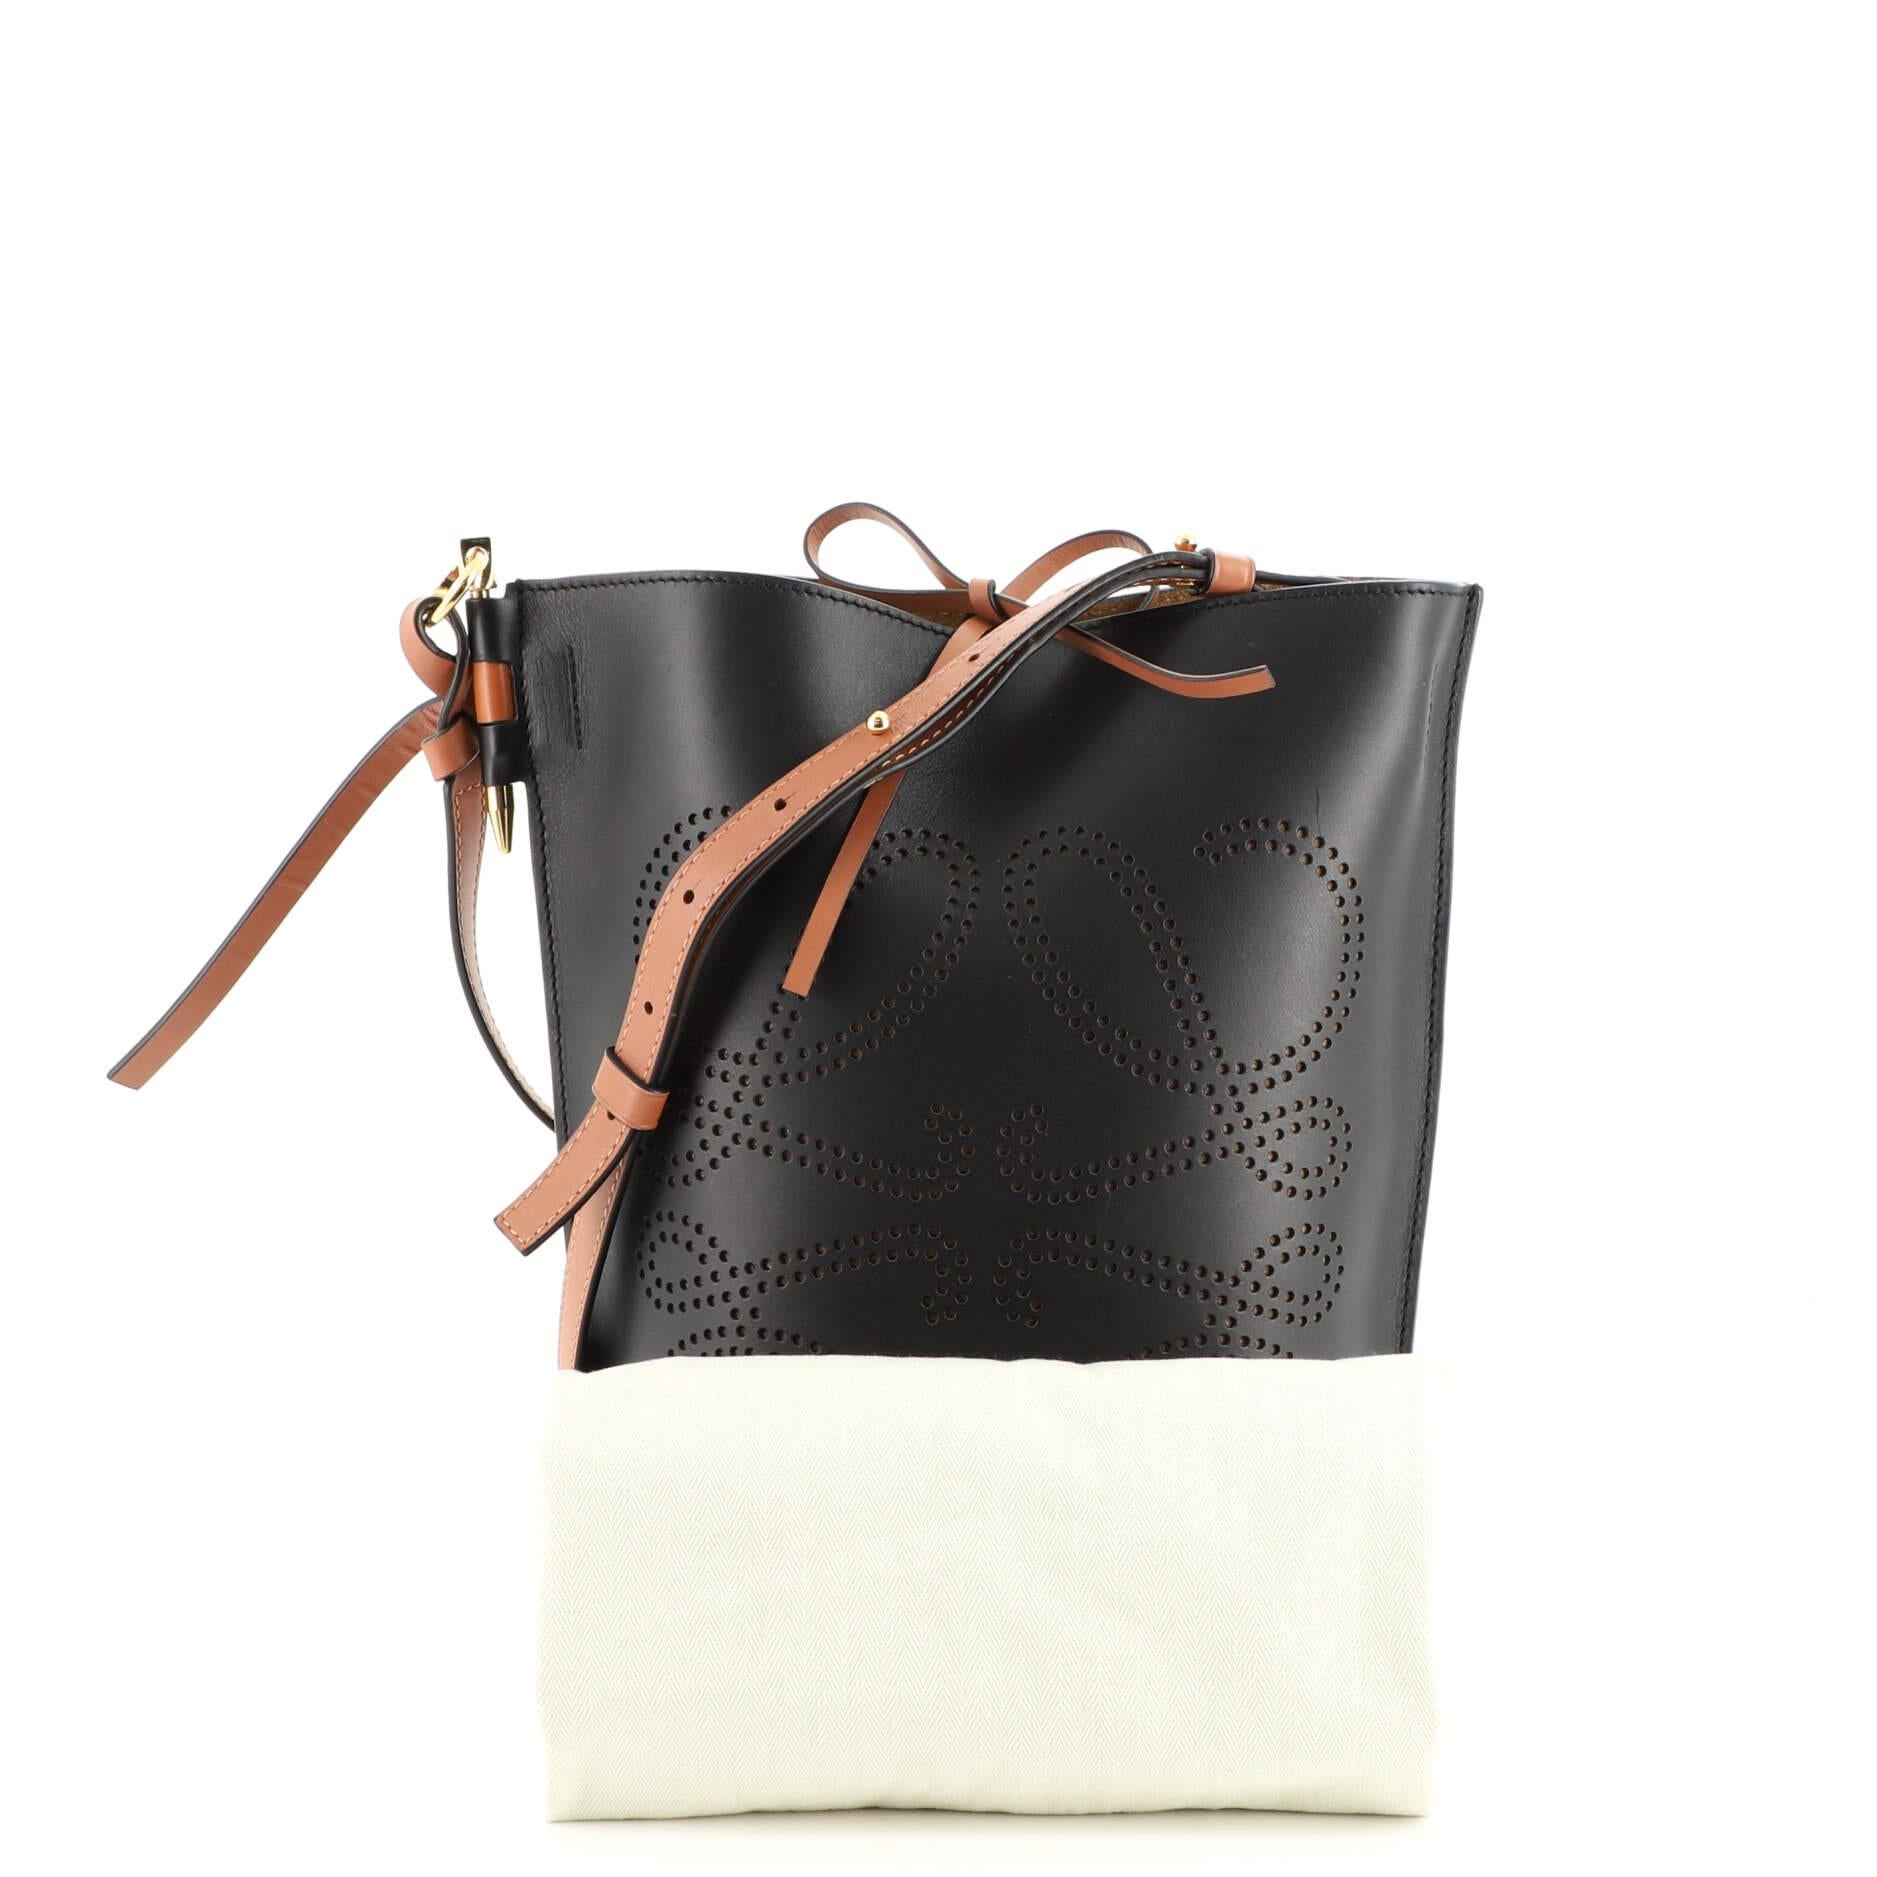 Loewe Gate Bucket - For Sale on 1stDibs  loewe bucket bag, loewe gate  bucket bag, loewe gate leather bucket bag